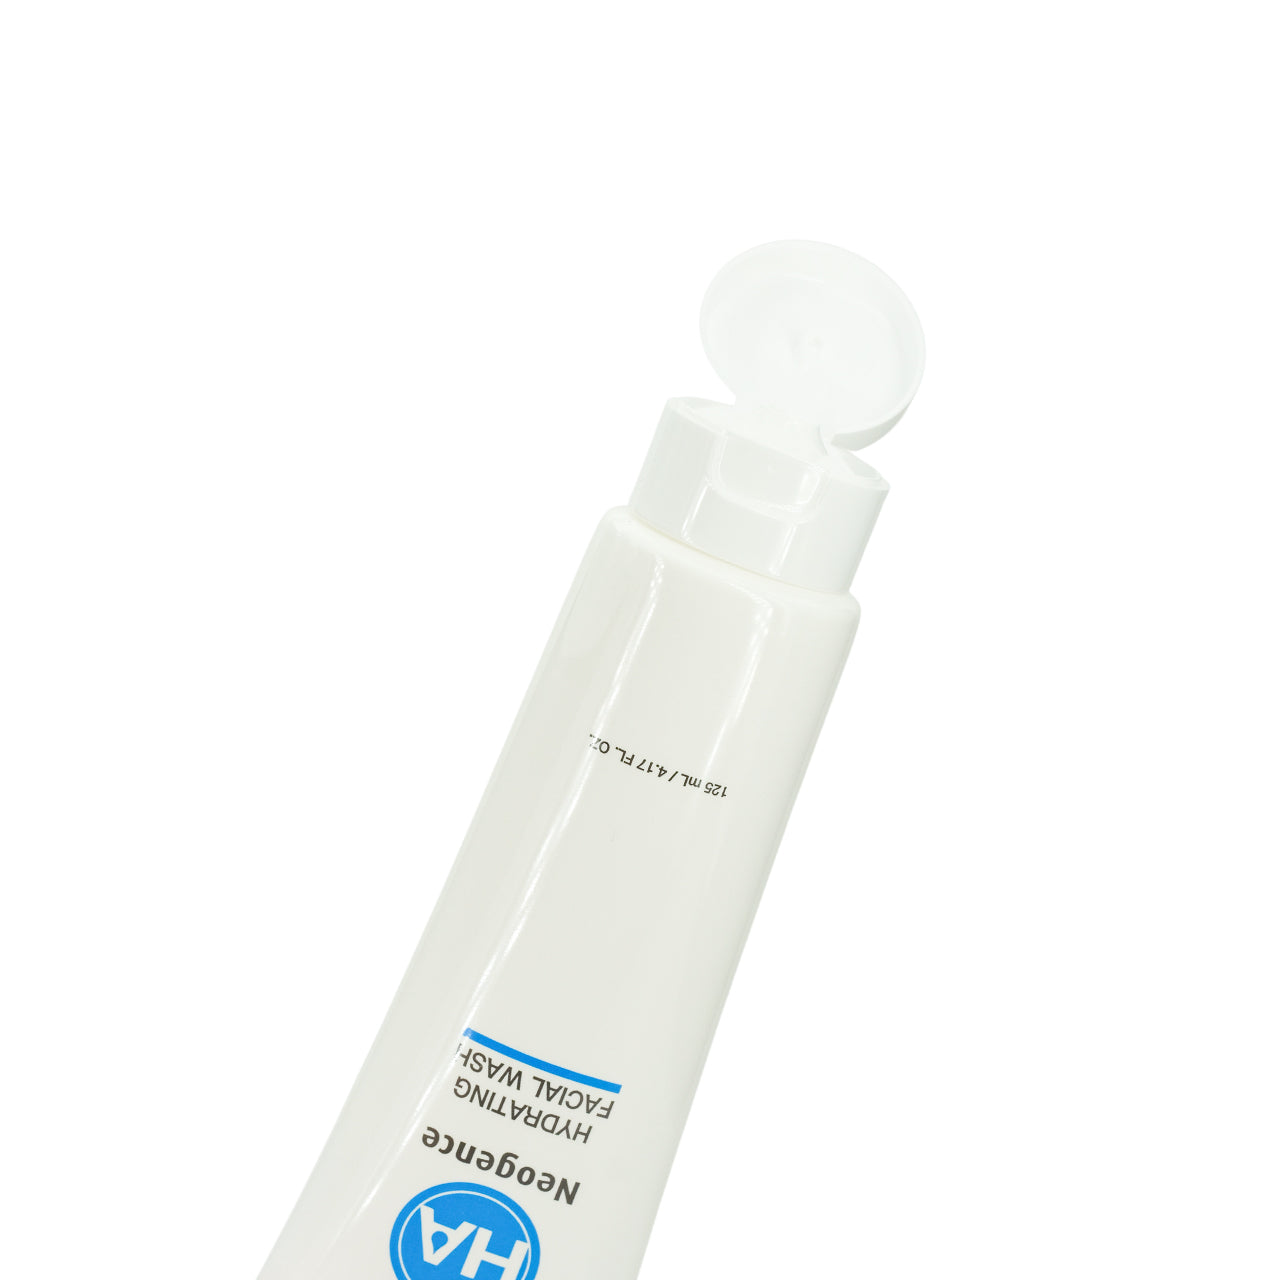 Neogence HA Hydrating Facial Wash 125ml | Sasa Global eShop